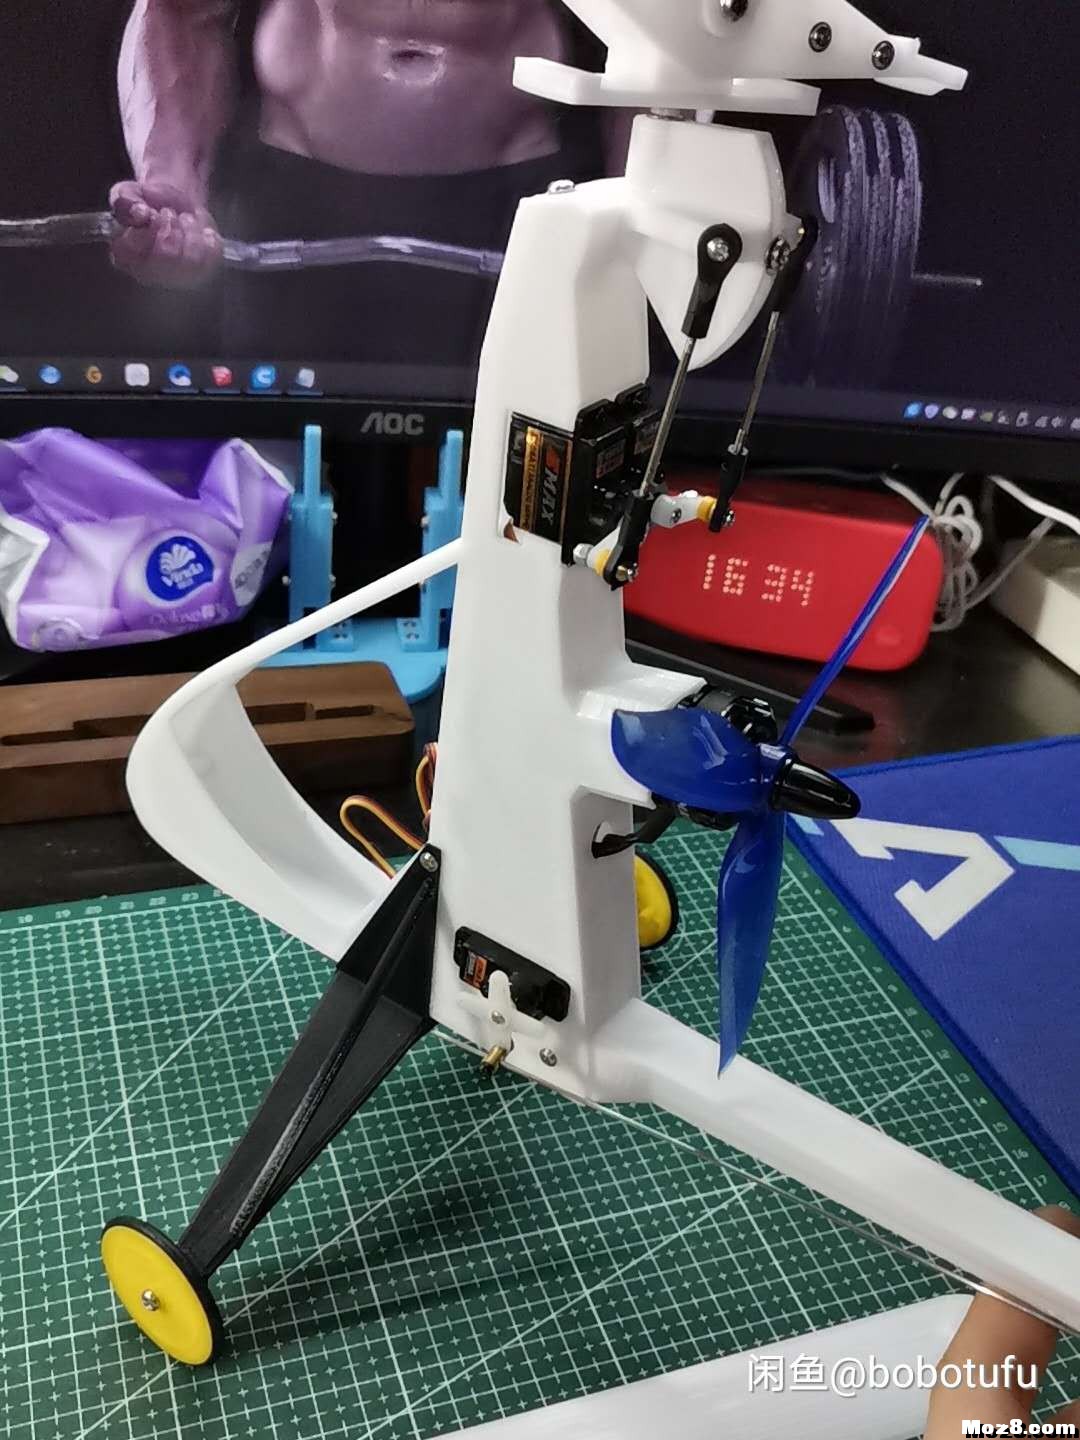 3D打印遥控旋翼机 电池,舵机,飞控,电调,电机 作者:bobotufu 4210 